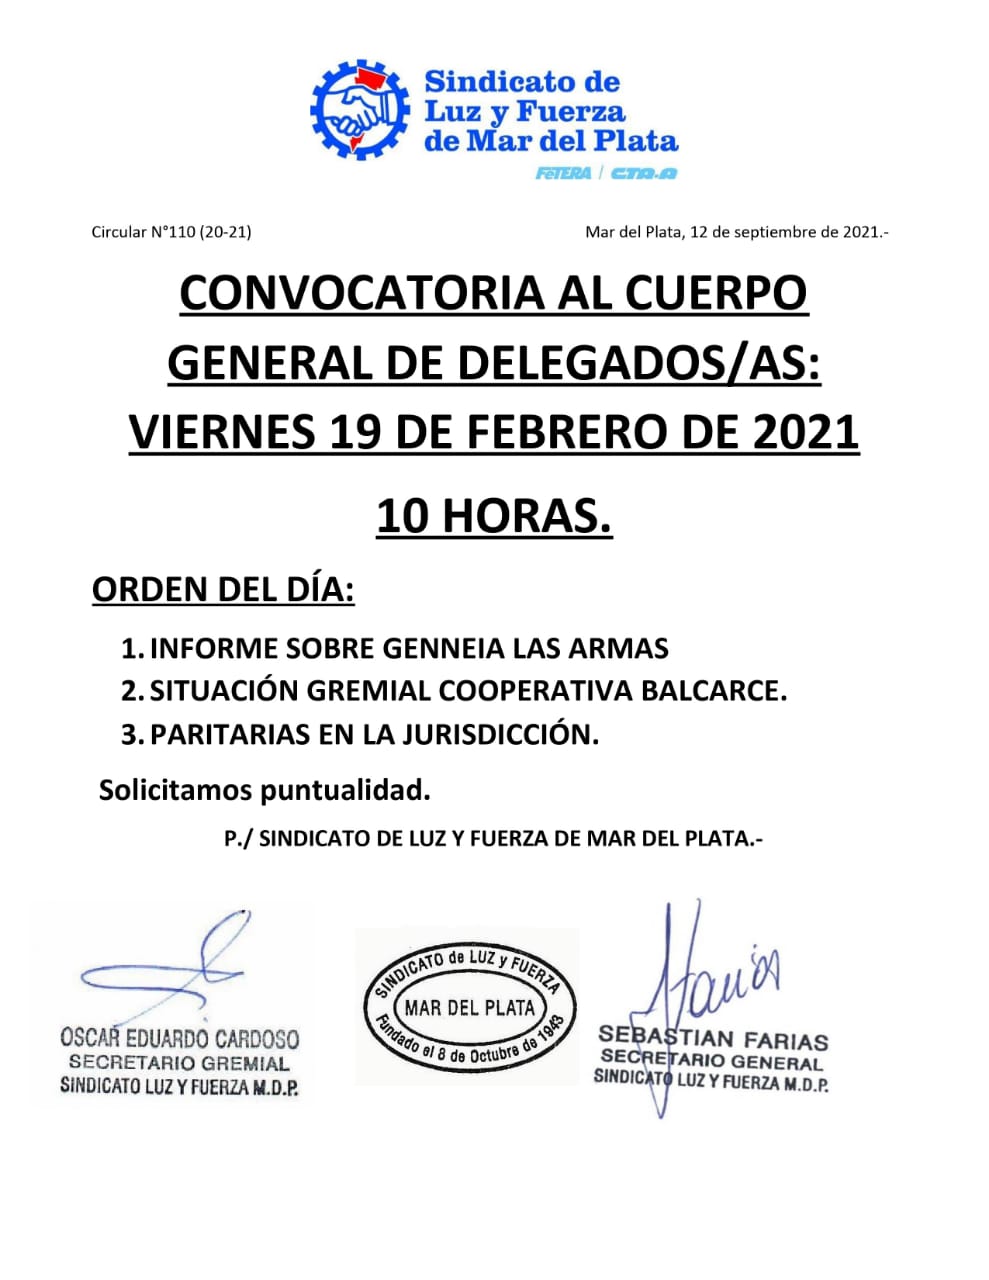 CONVOCATORIA AL CUERPO GENERAL DE DELEGADOS/AS: VIERNES 19.2.21